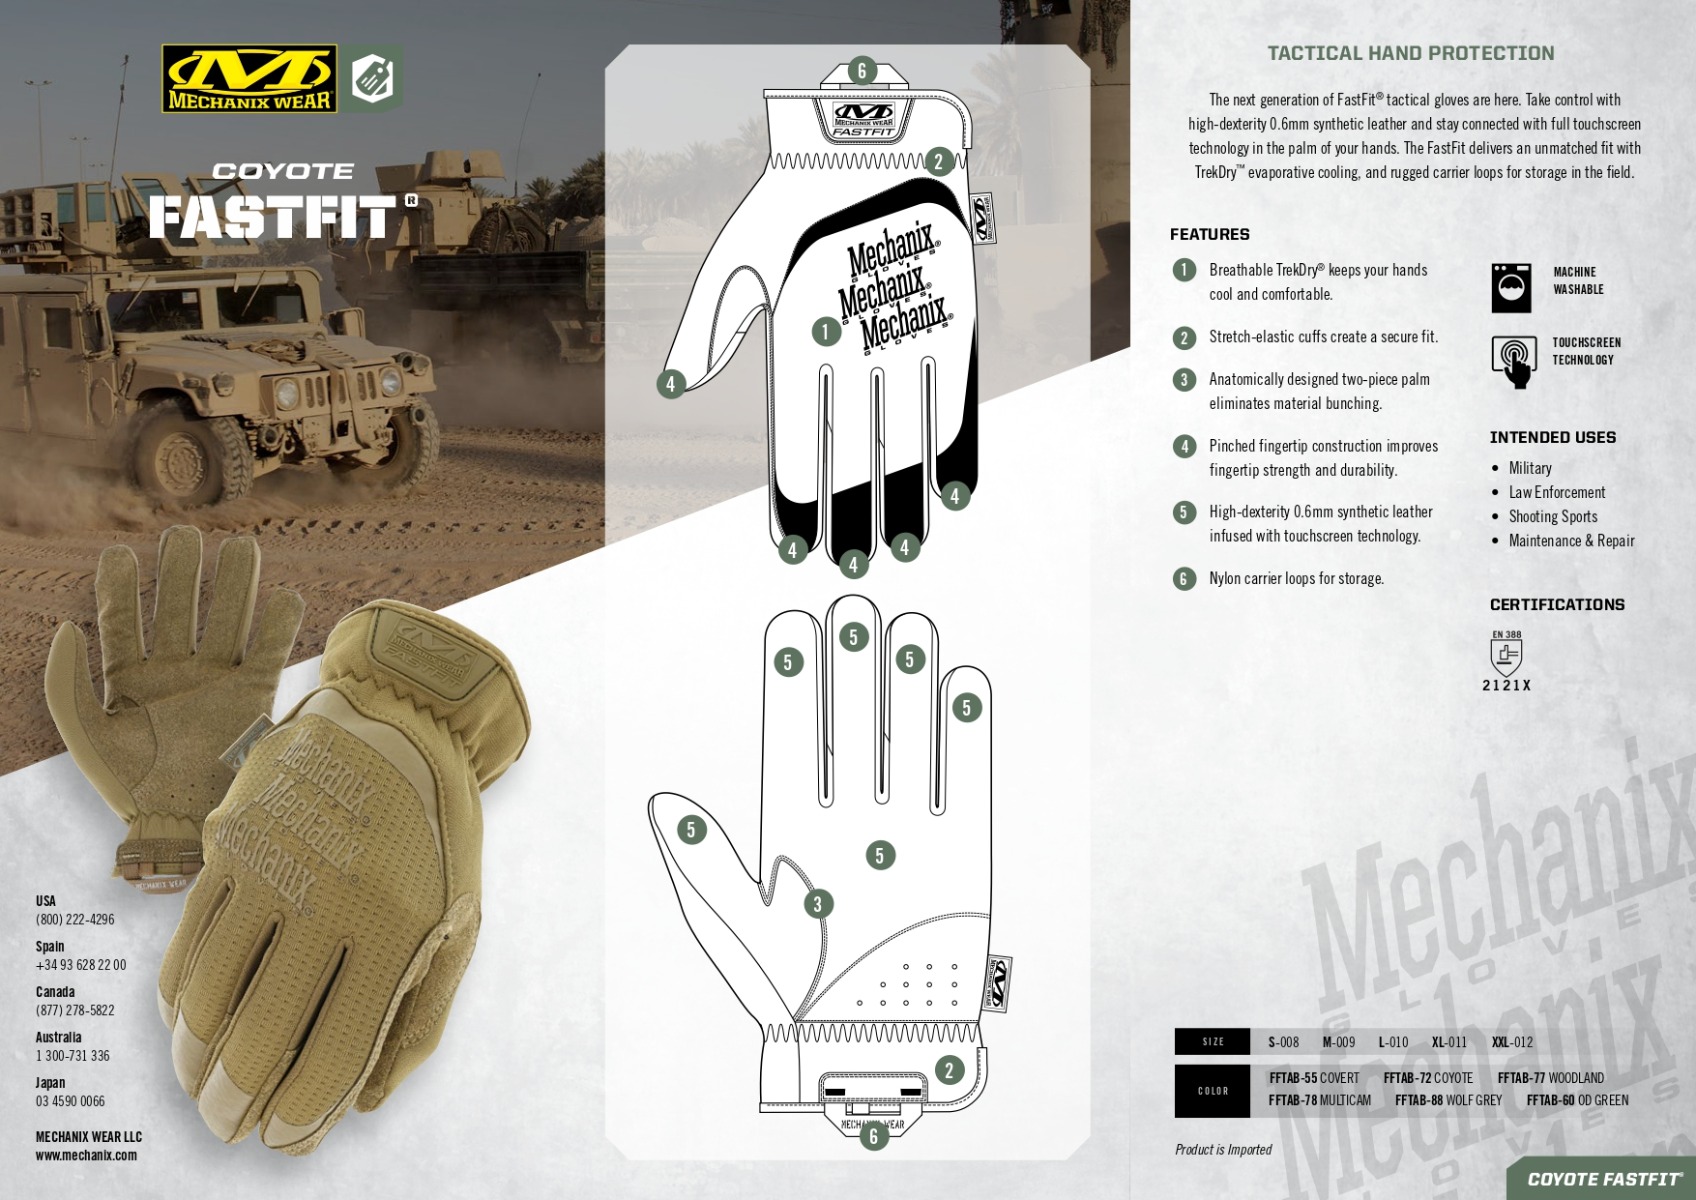 Zaščitite svoje roke z vrhunskimi taktičnimi rokavicami Mechanix Wear Fast Fit Coyote EN388 2121X. Trpežne, udobne in z odličnim oprijemom za delo ali športne aktivnosti. Opremljen.si - vaša zanesljiva izbira.